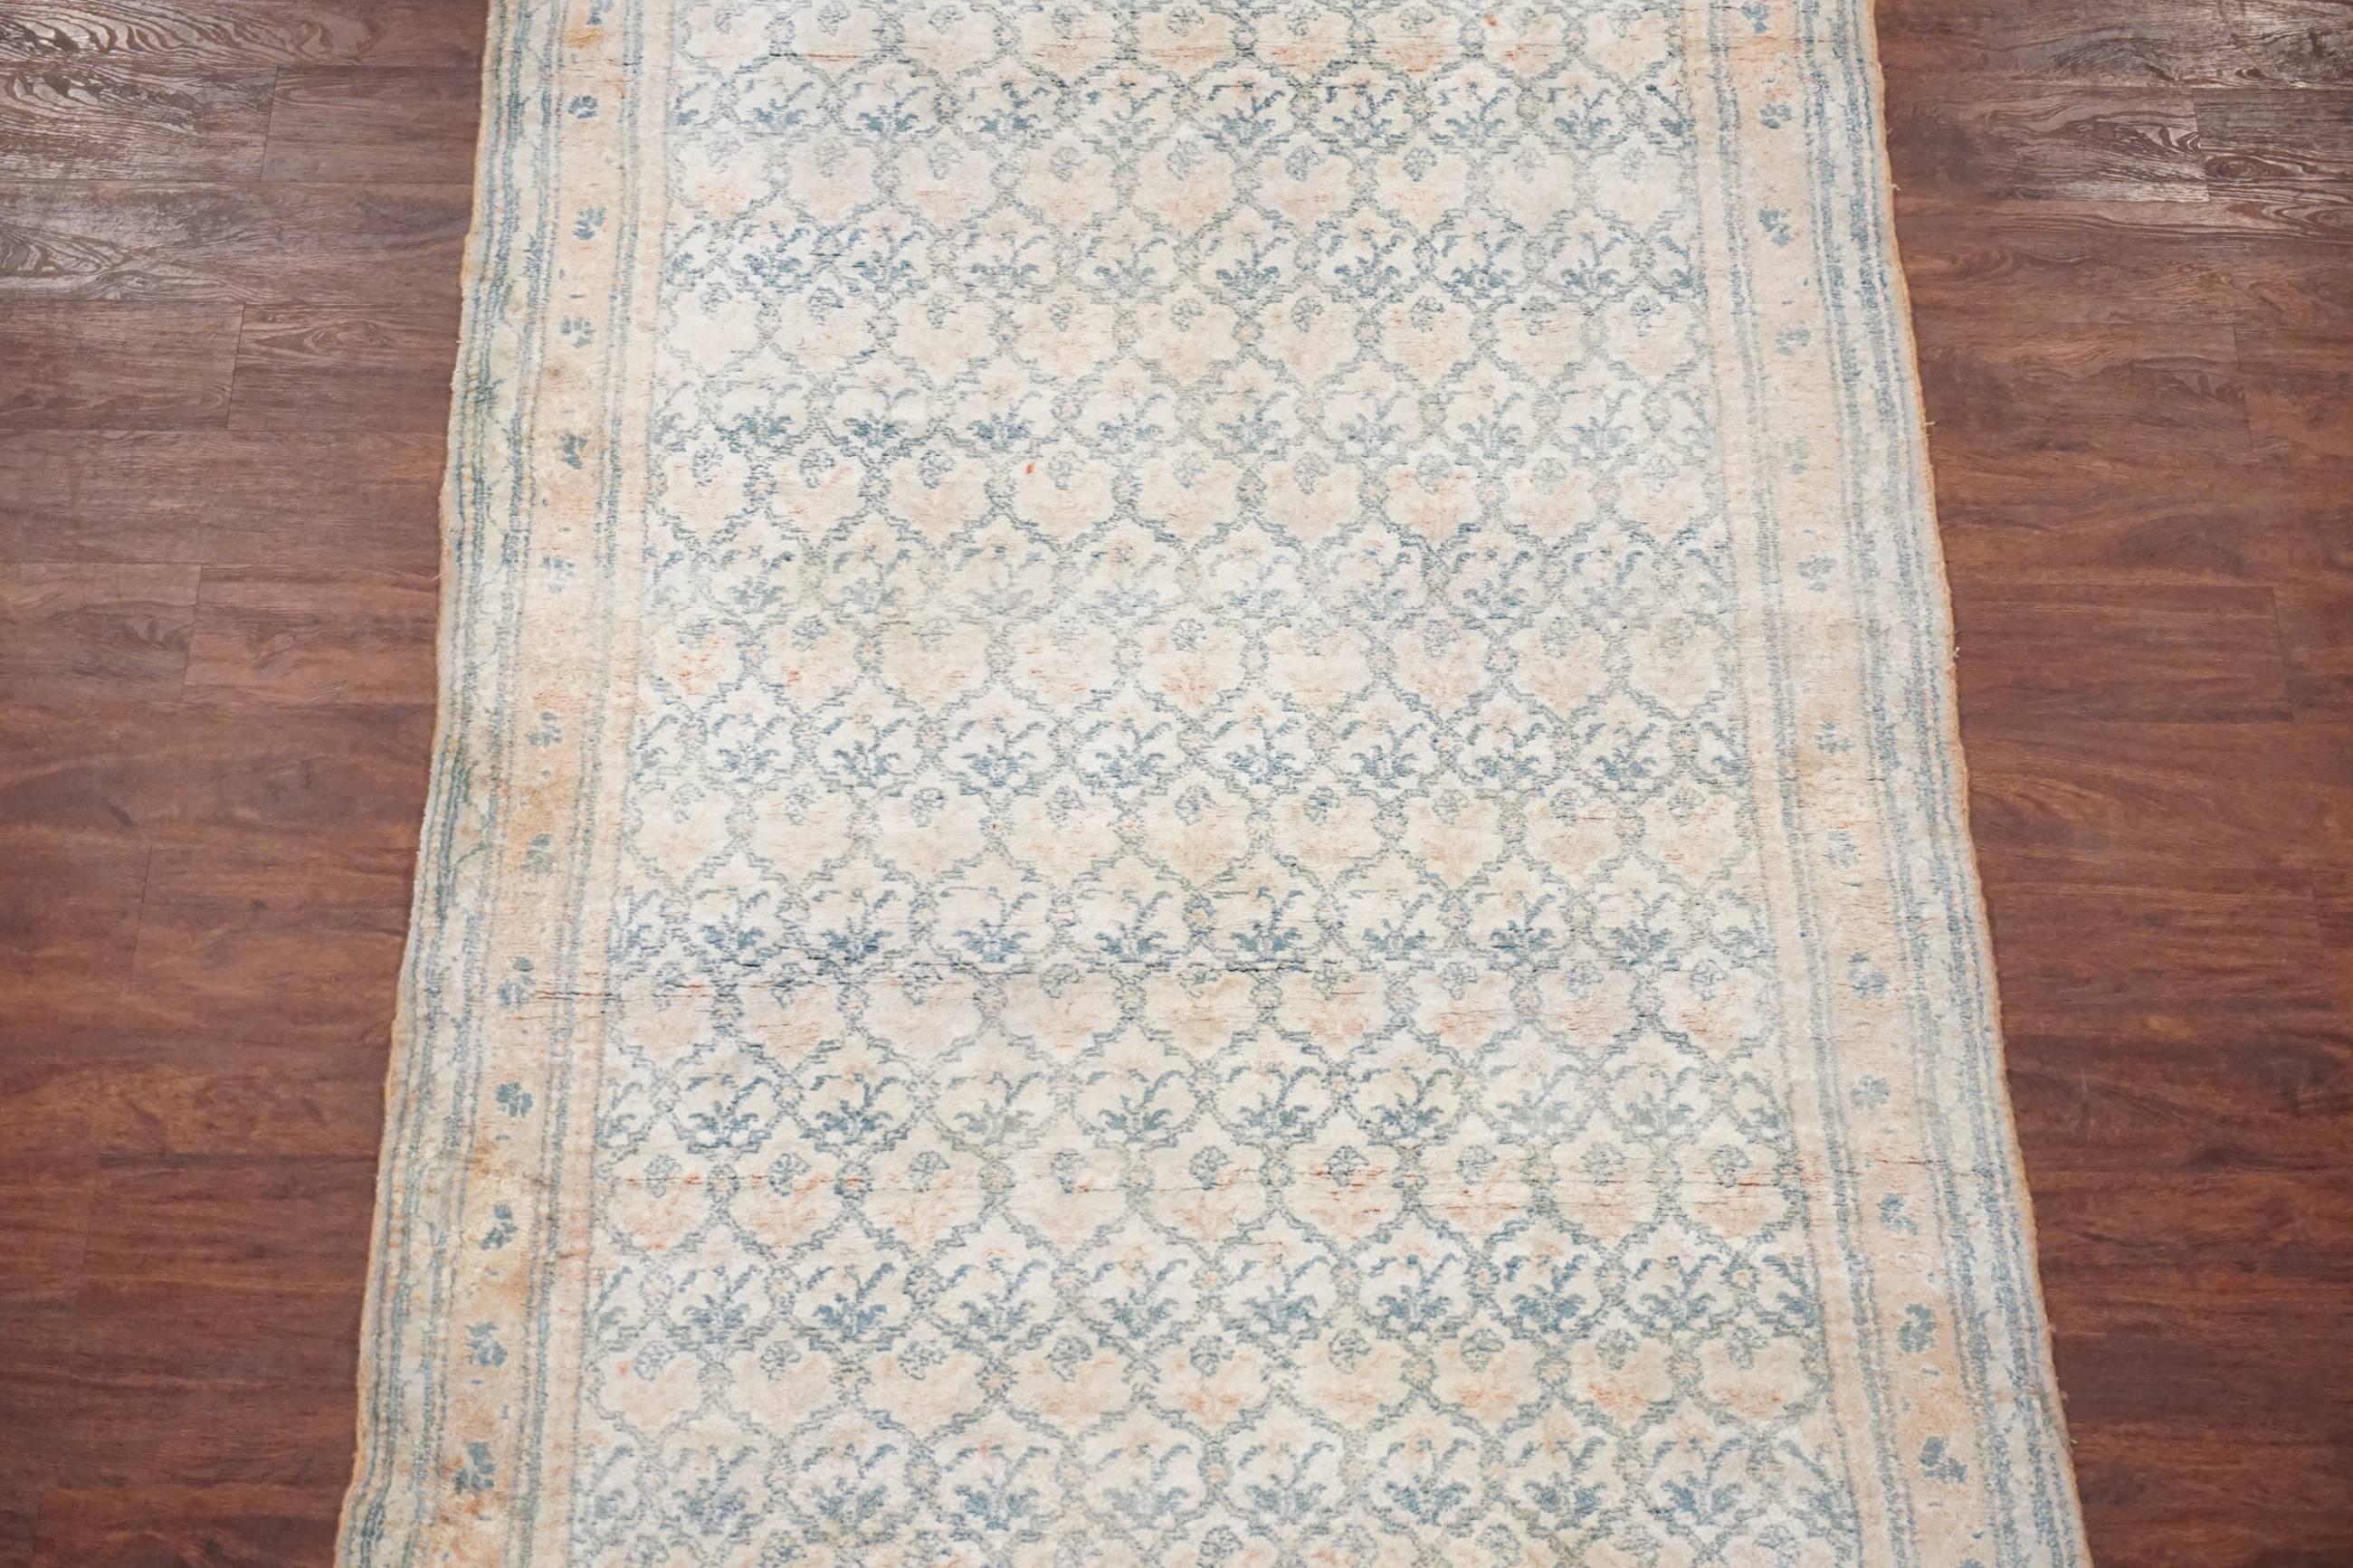 Antique Indian cotton Agra rug.

circa 1920

Measures: 4'5